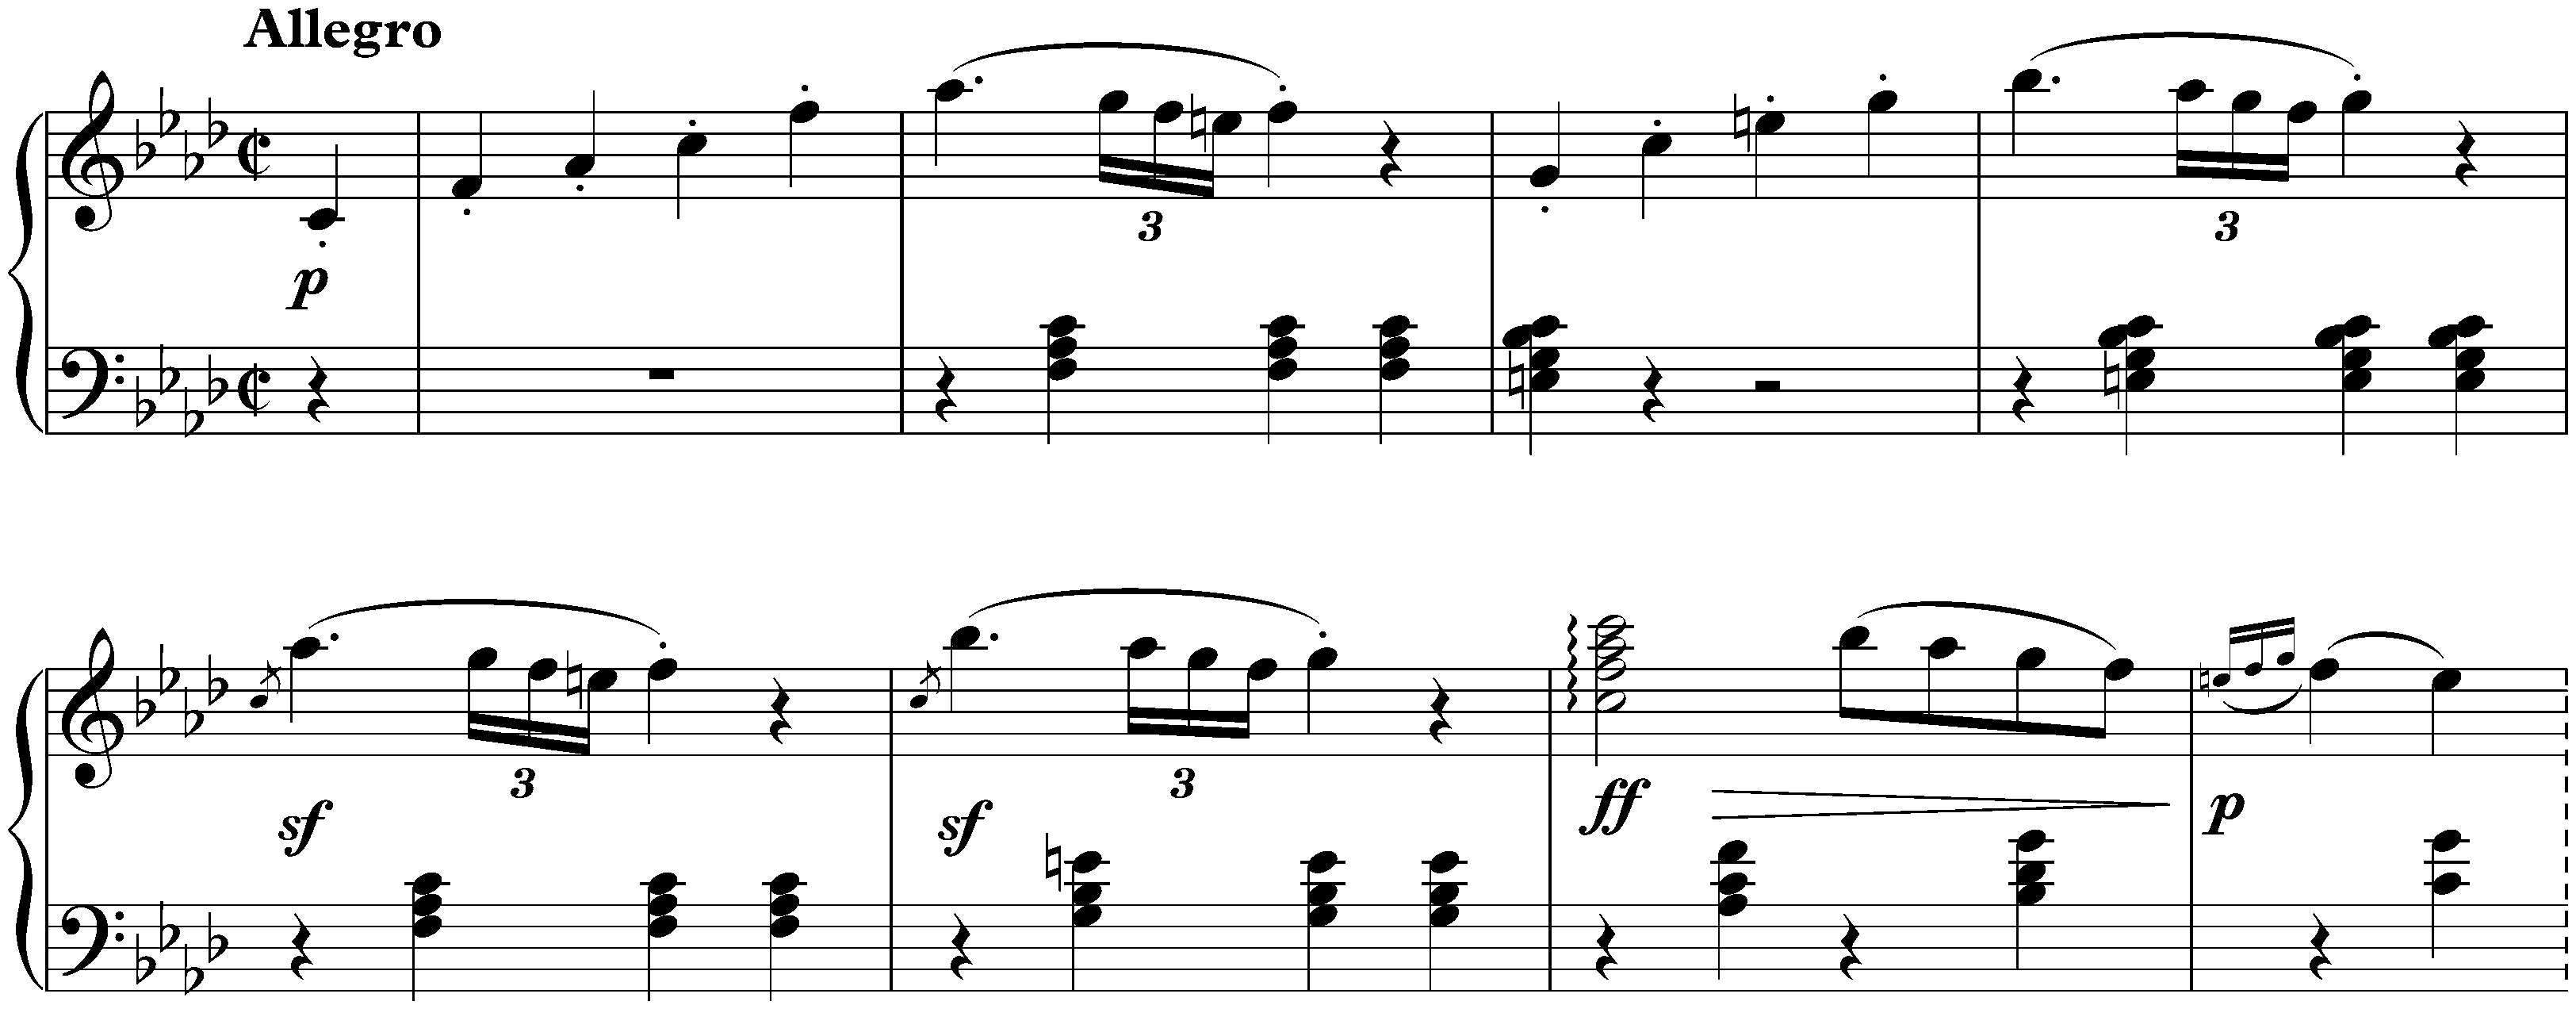 Sonata no. 1 in F minor, op. 2 no. 1; 1. Allegro